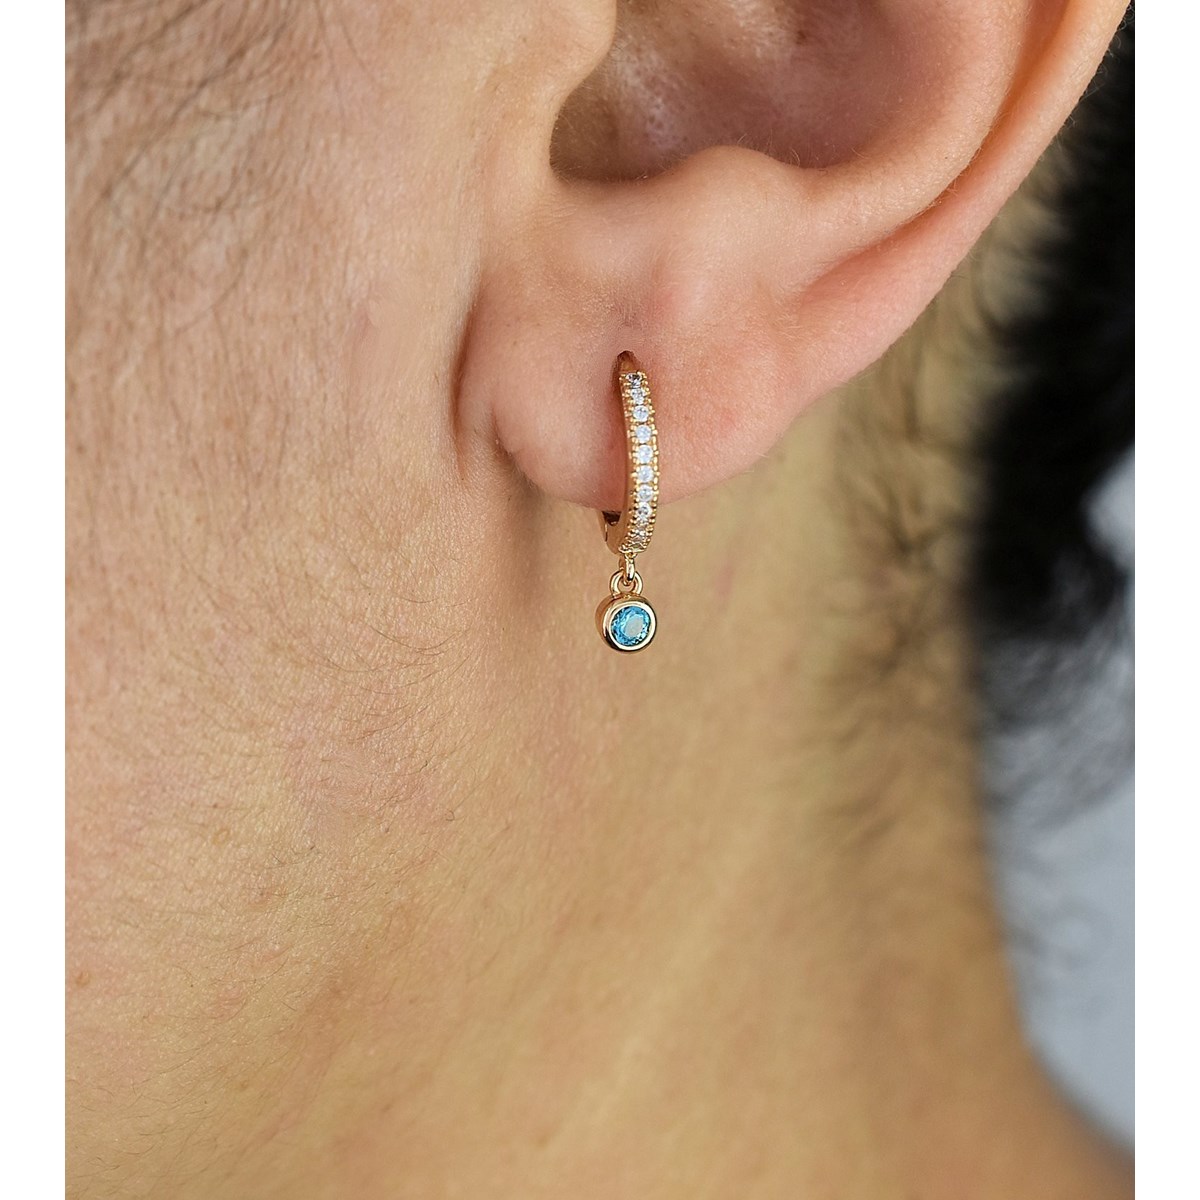 Boucles d'oreilles mini créole sertie d'oxyde de zirconium bleu vert Plaqué or 750 3 microns - vue 2